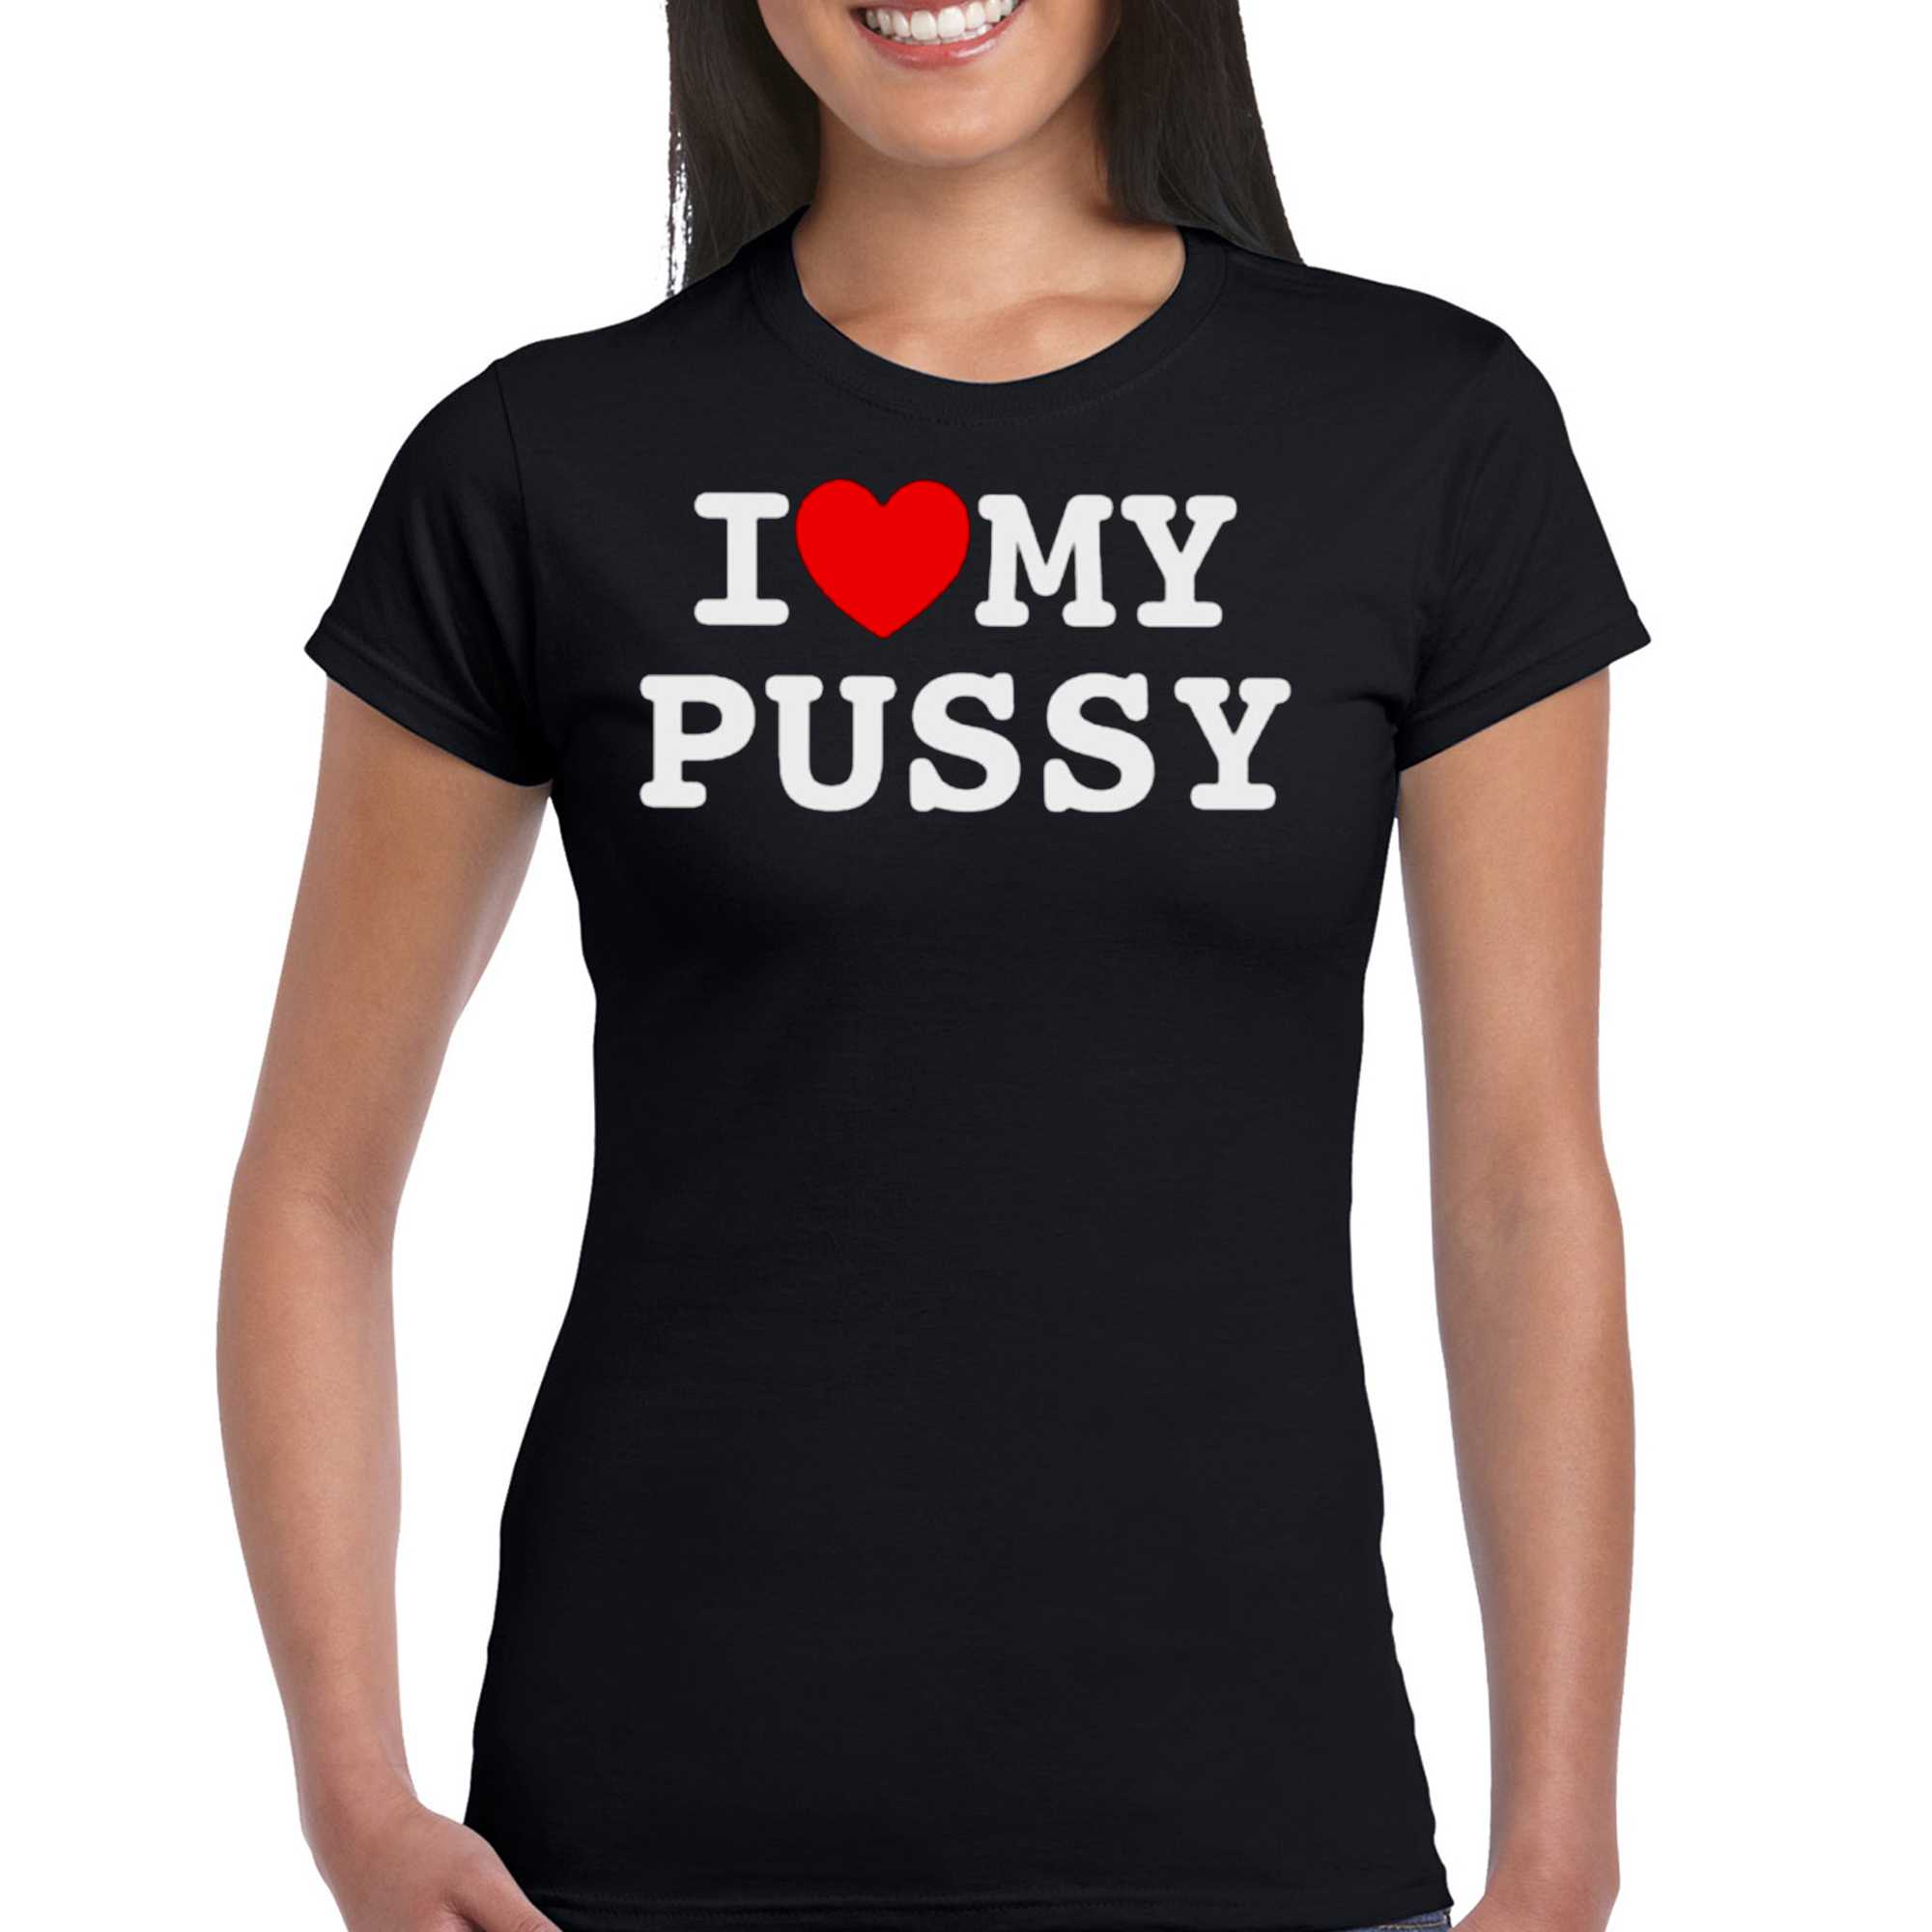 dana perdana recommends I Love Pussy